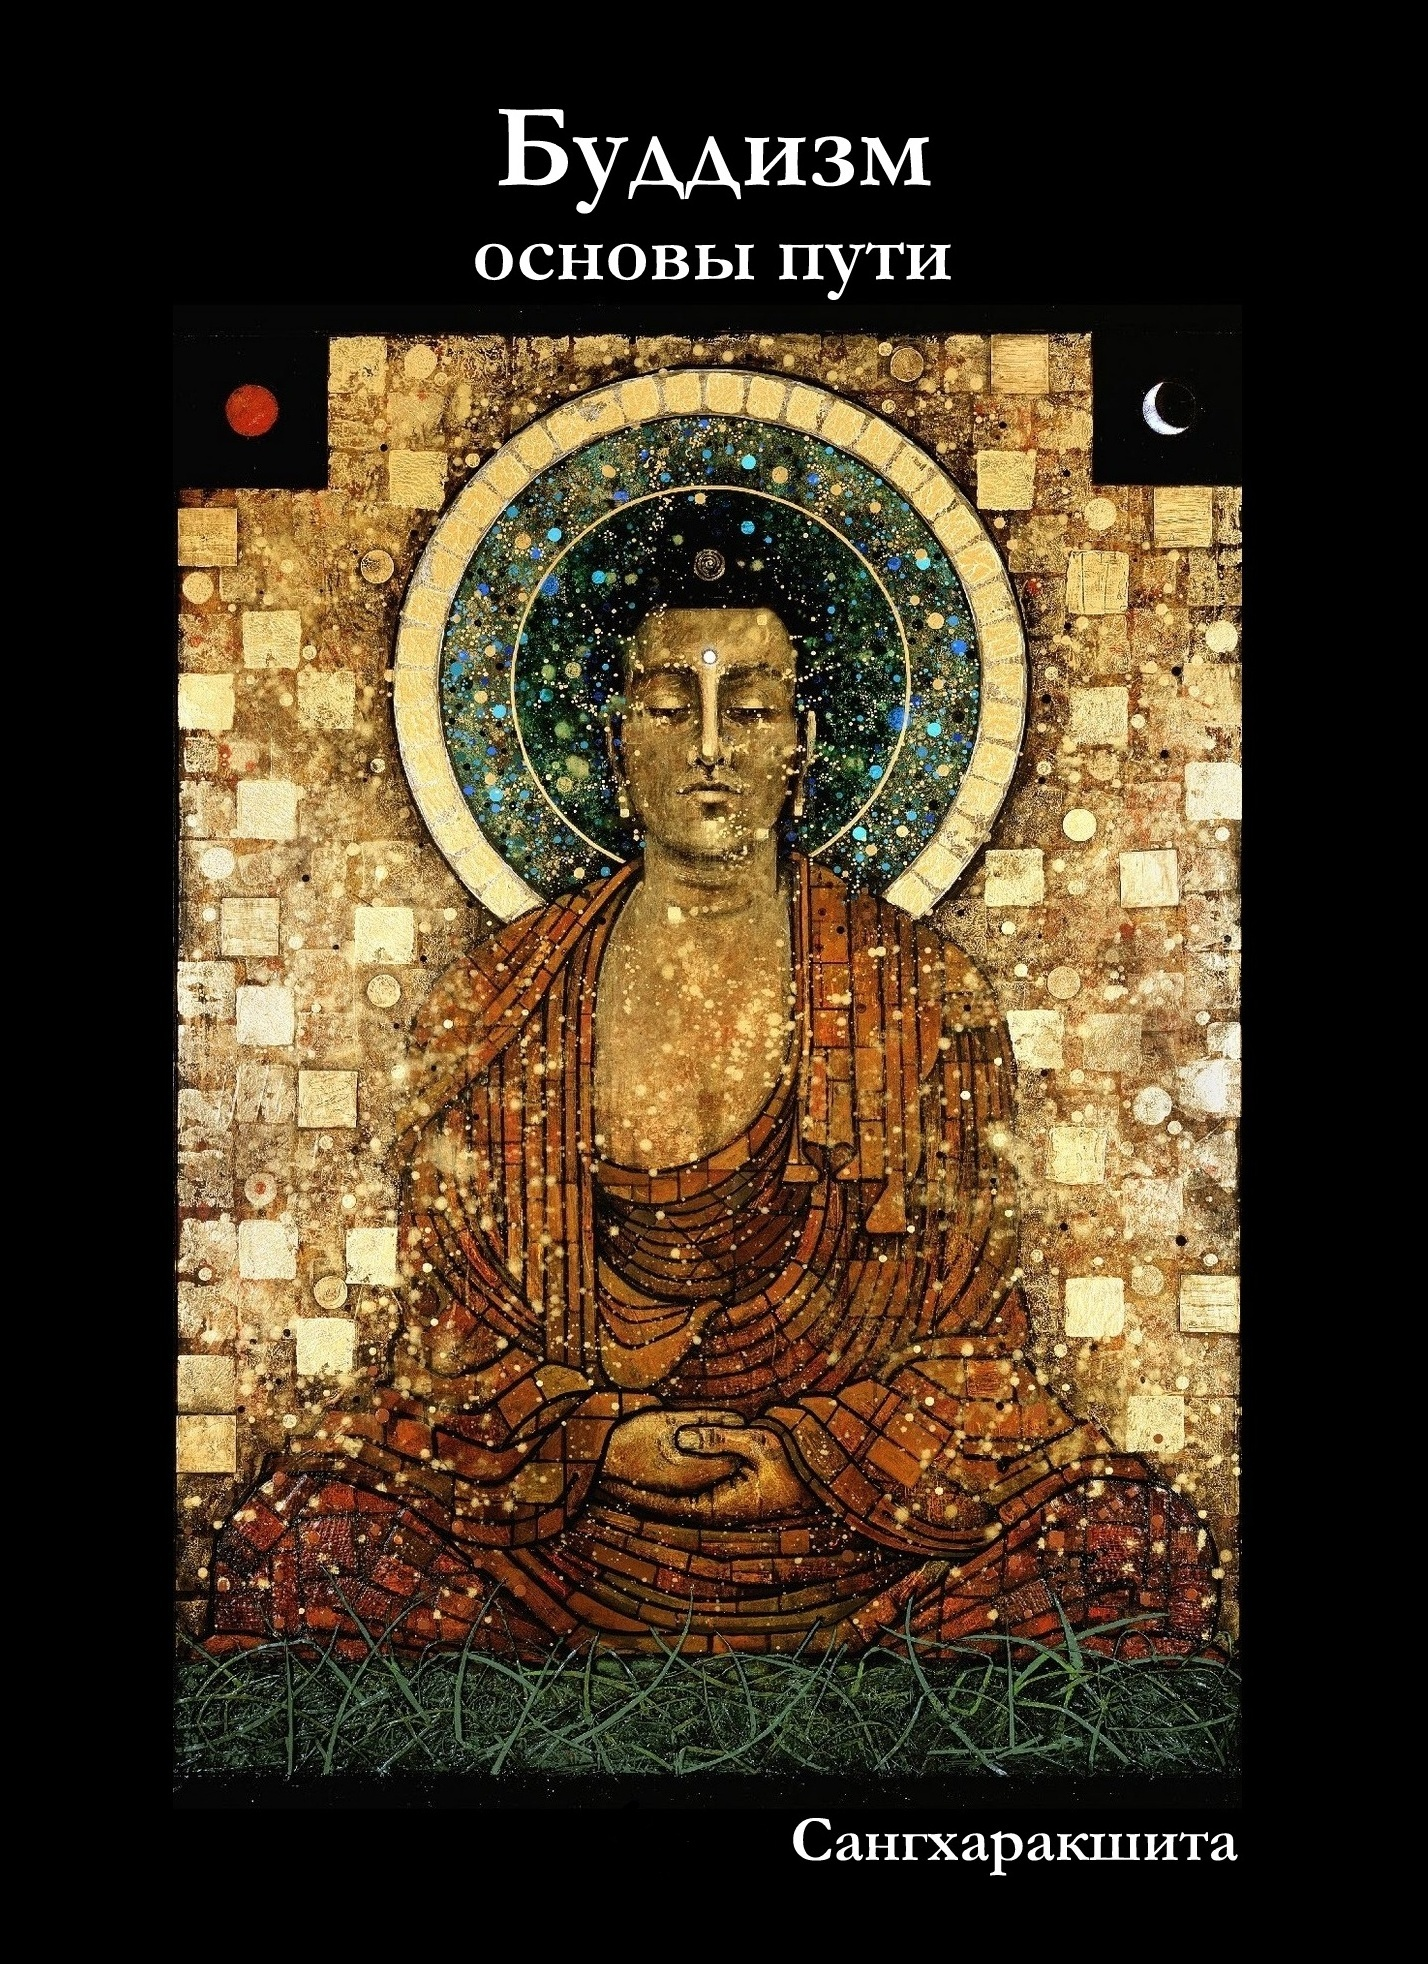 Скачать книги о буддизме